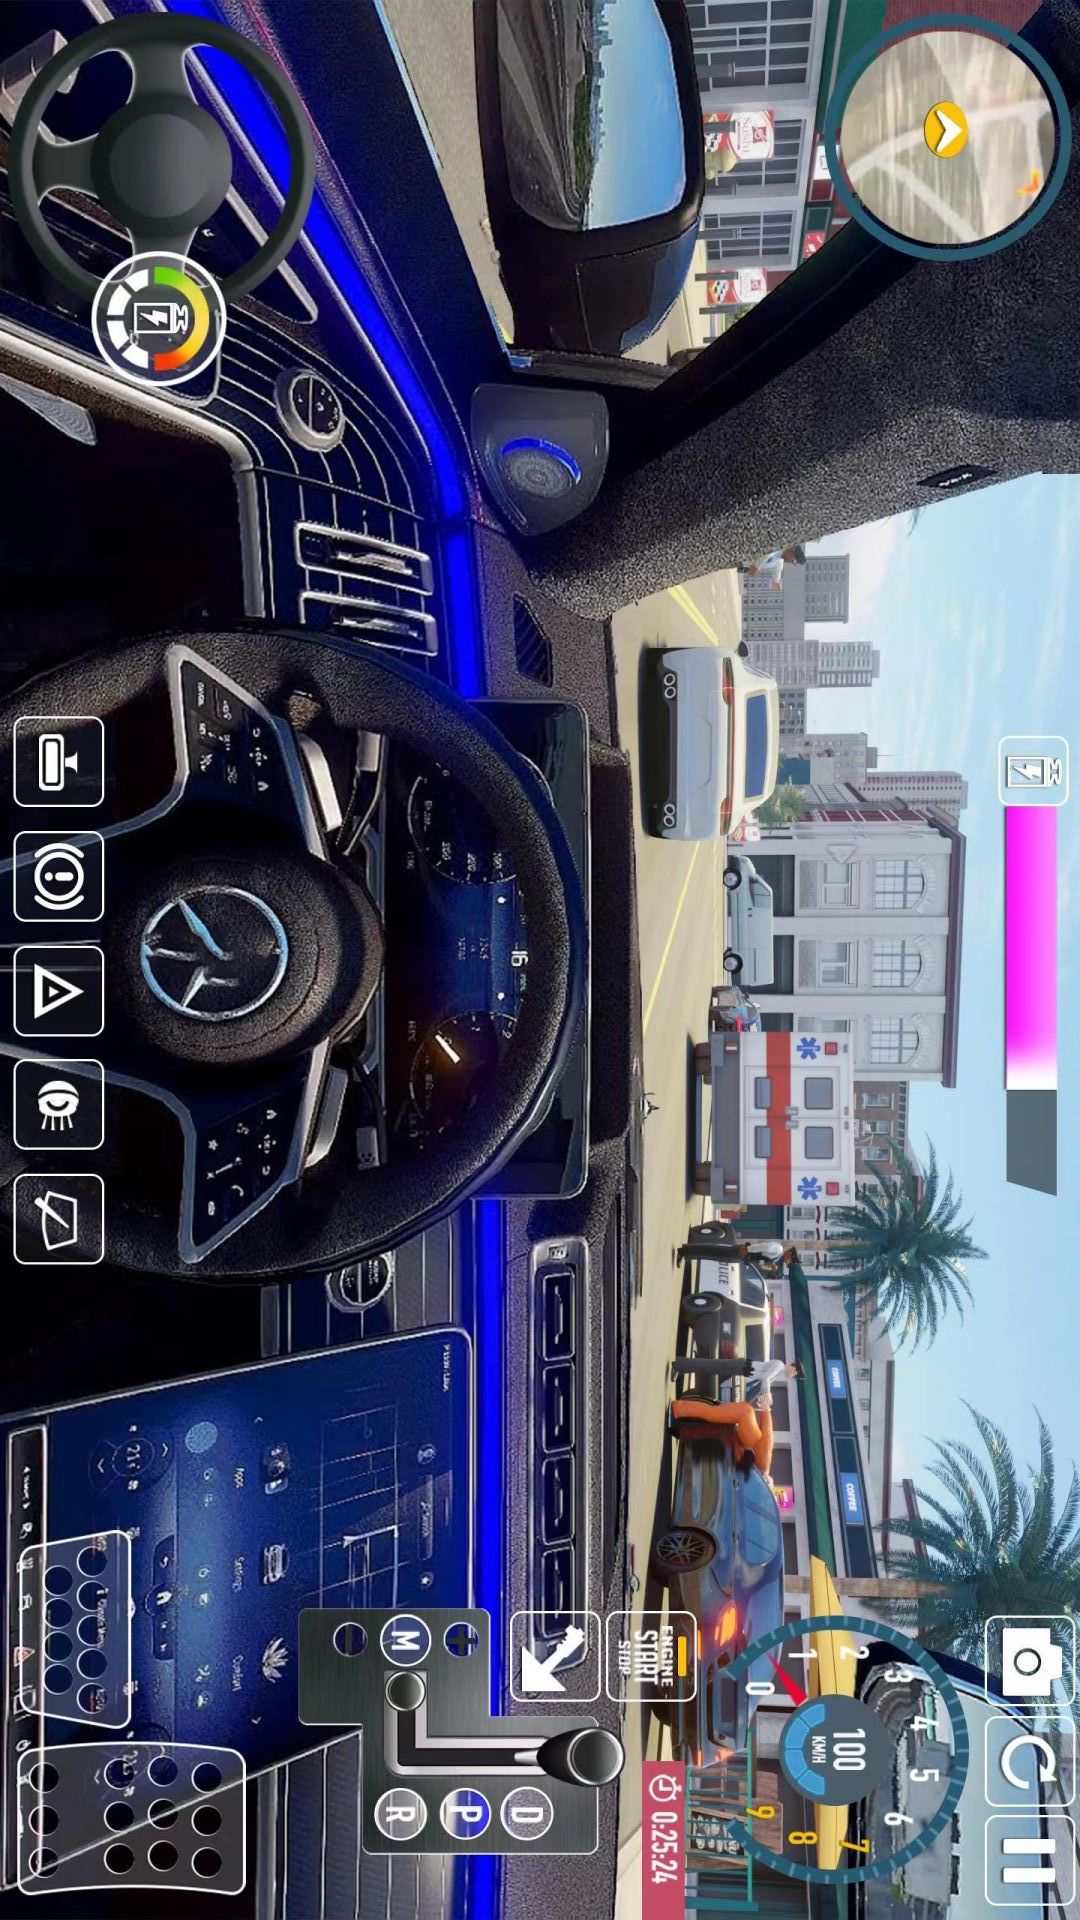 真实城市模拟驾驶游戏